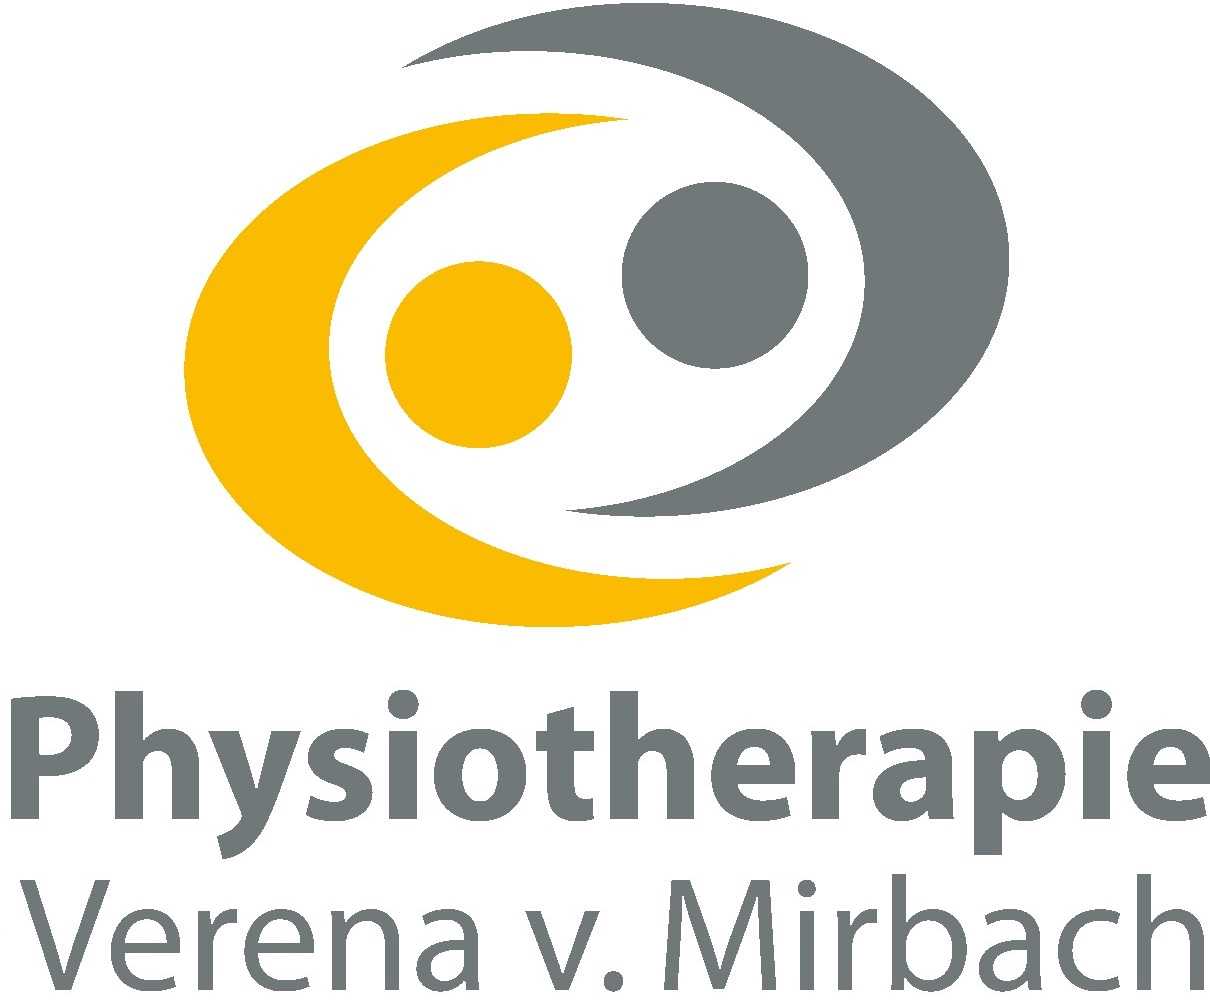 Physiotherapie Verena v. Mirbach - Logo